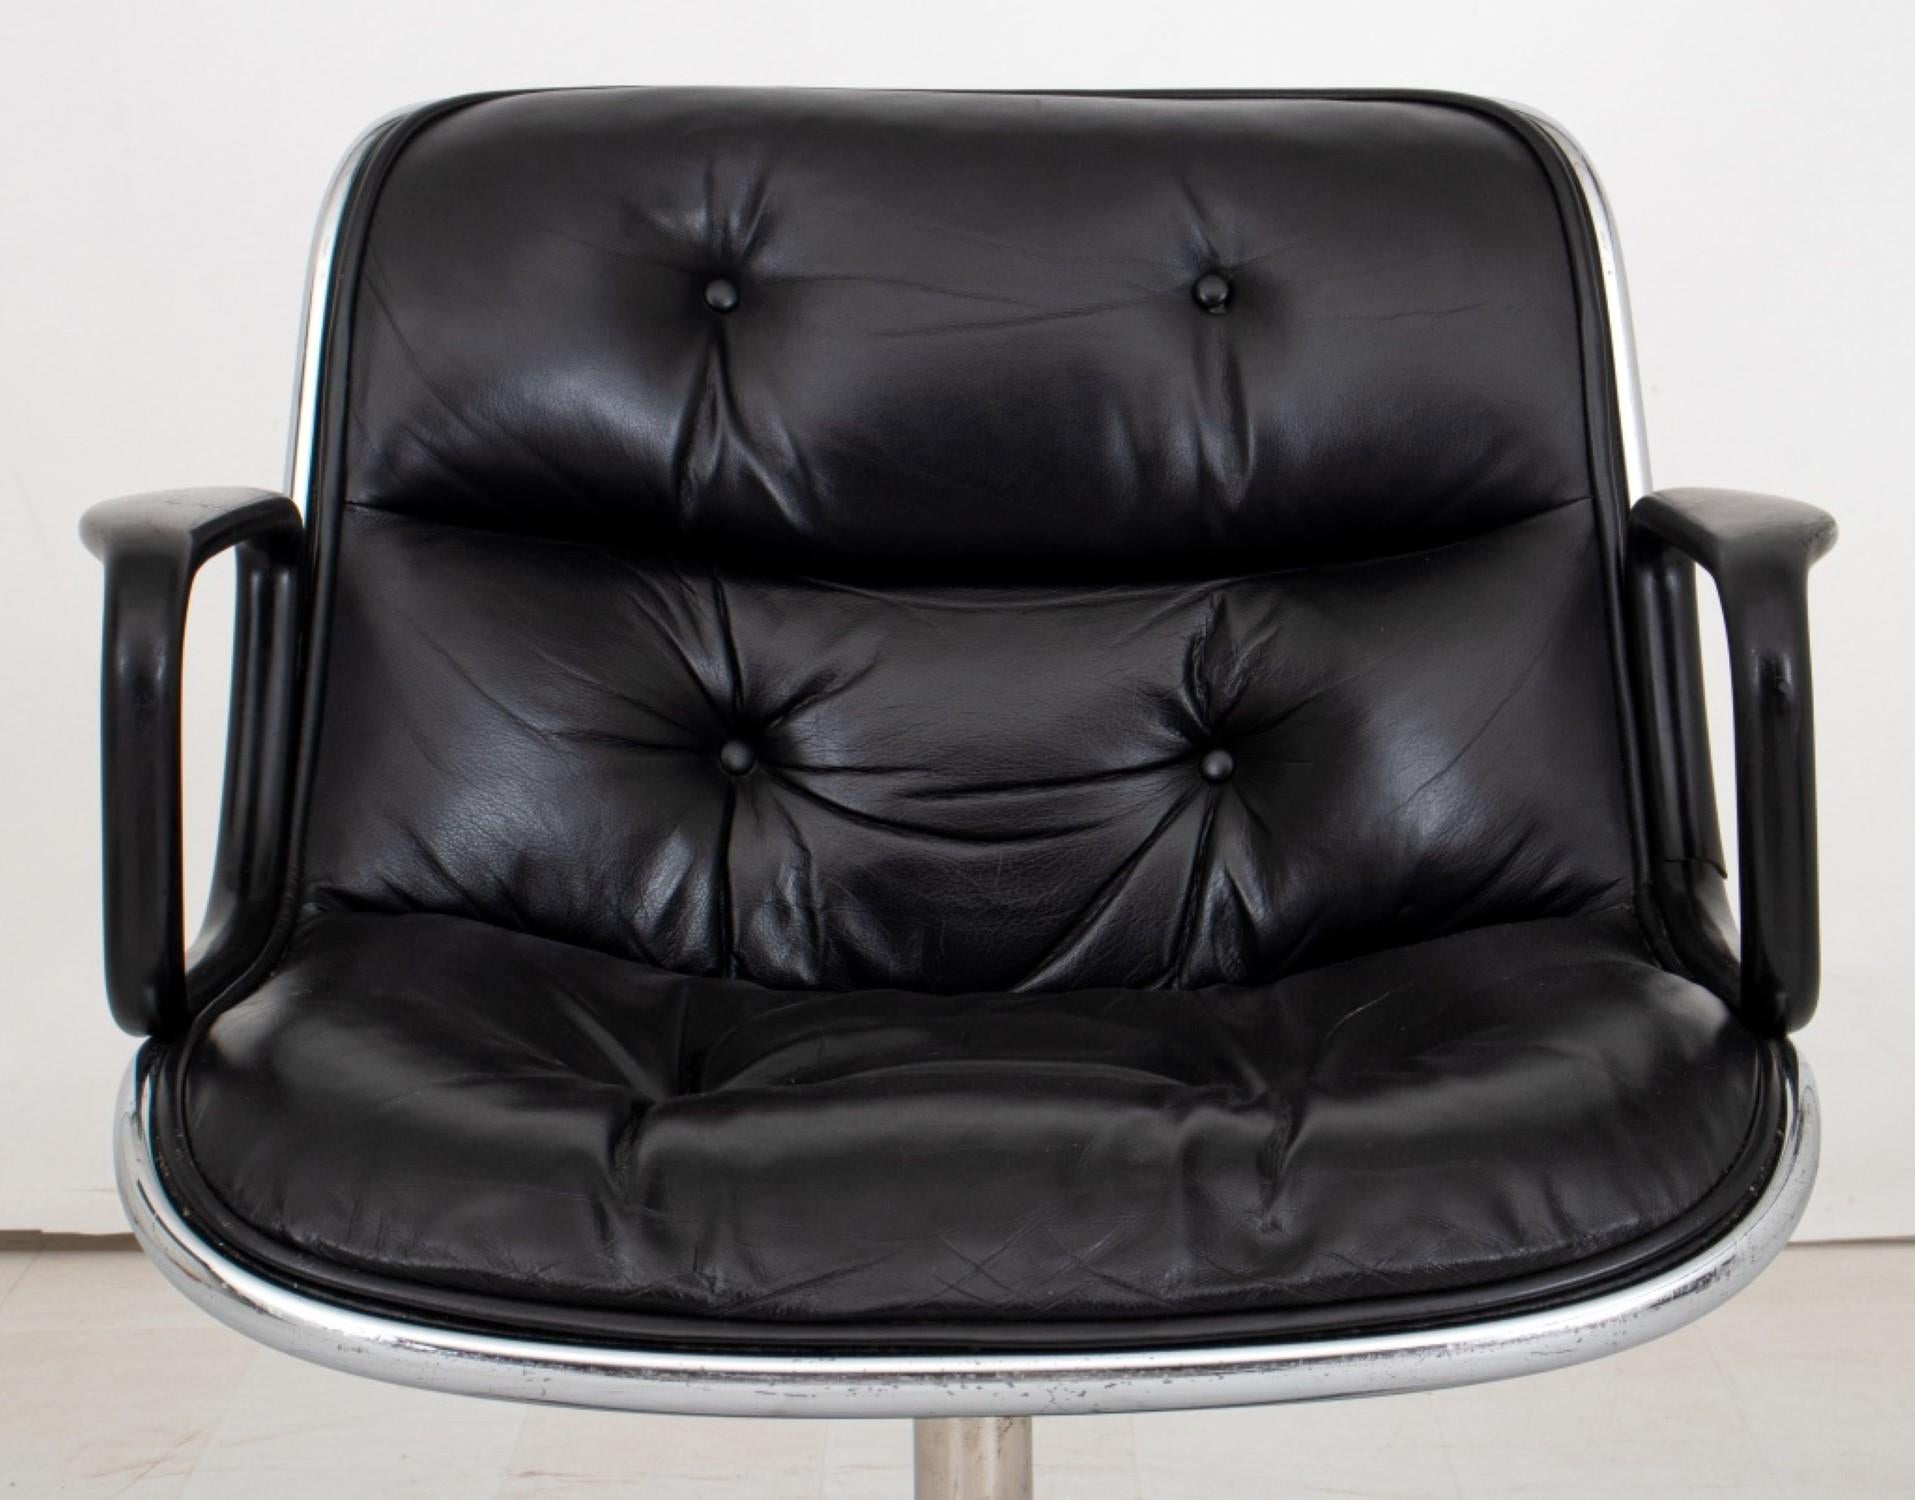 Pollock-Bürostuhl für Knoll International:
Charles Pollock Bürostuhl für Knoll International (1963)
Design/One: Sitz und Rückenlehne aus schwarzem Leder mit Knopftuft auf einem verchromten Fuß mit vier Rollen.
Abmessungen: 32,25